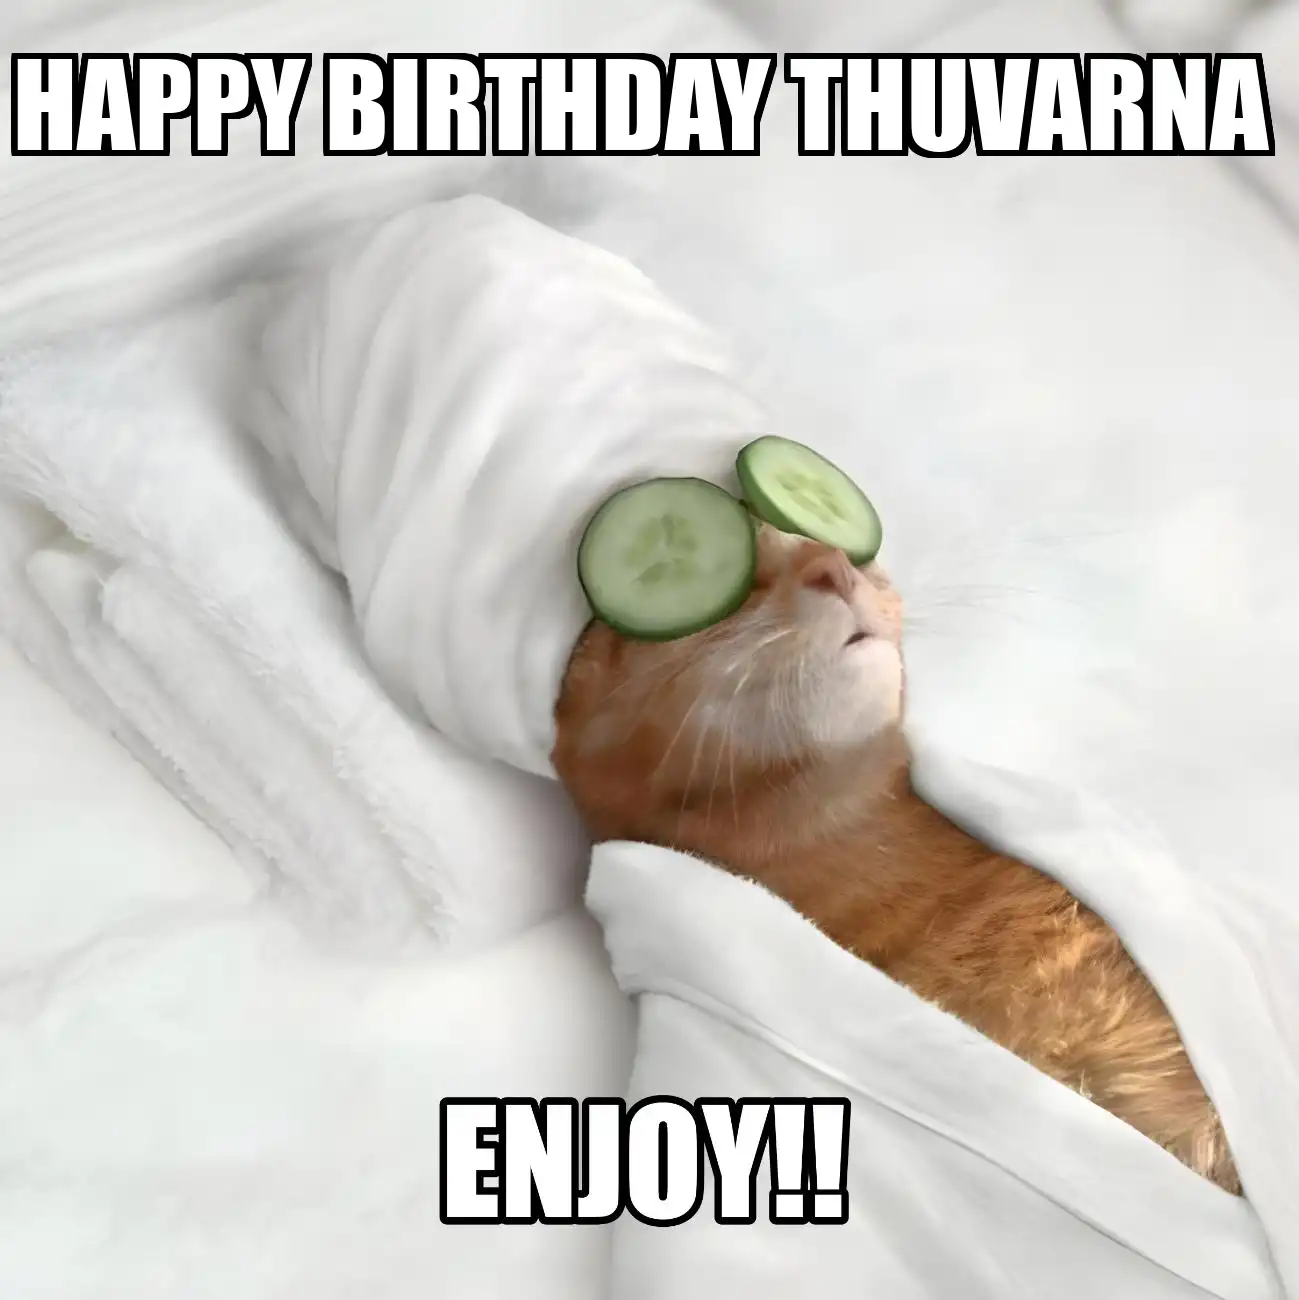 Happy Birthday Thuvarna Enjoy Cat Meme